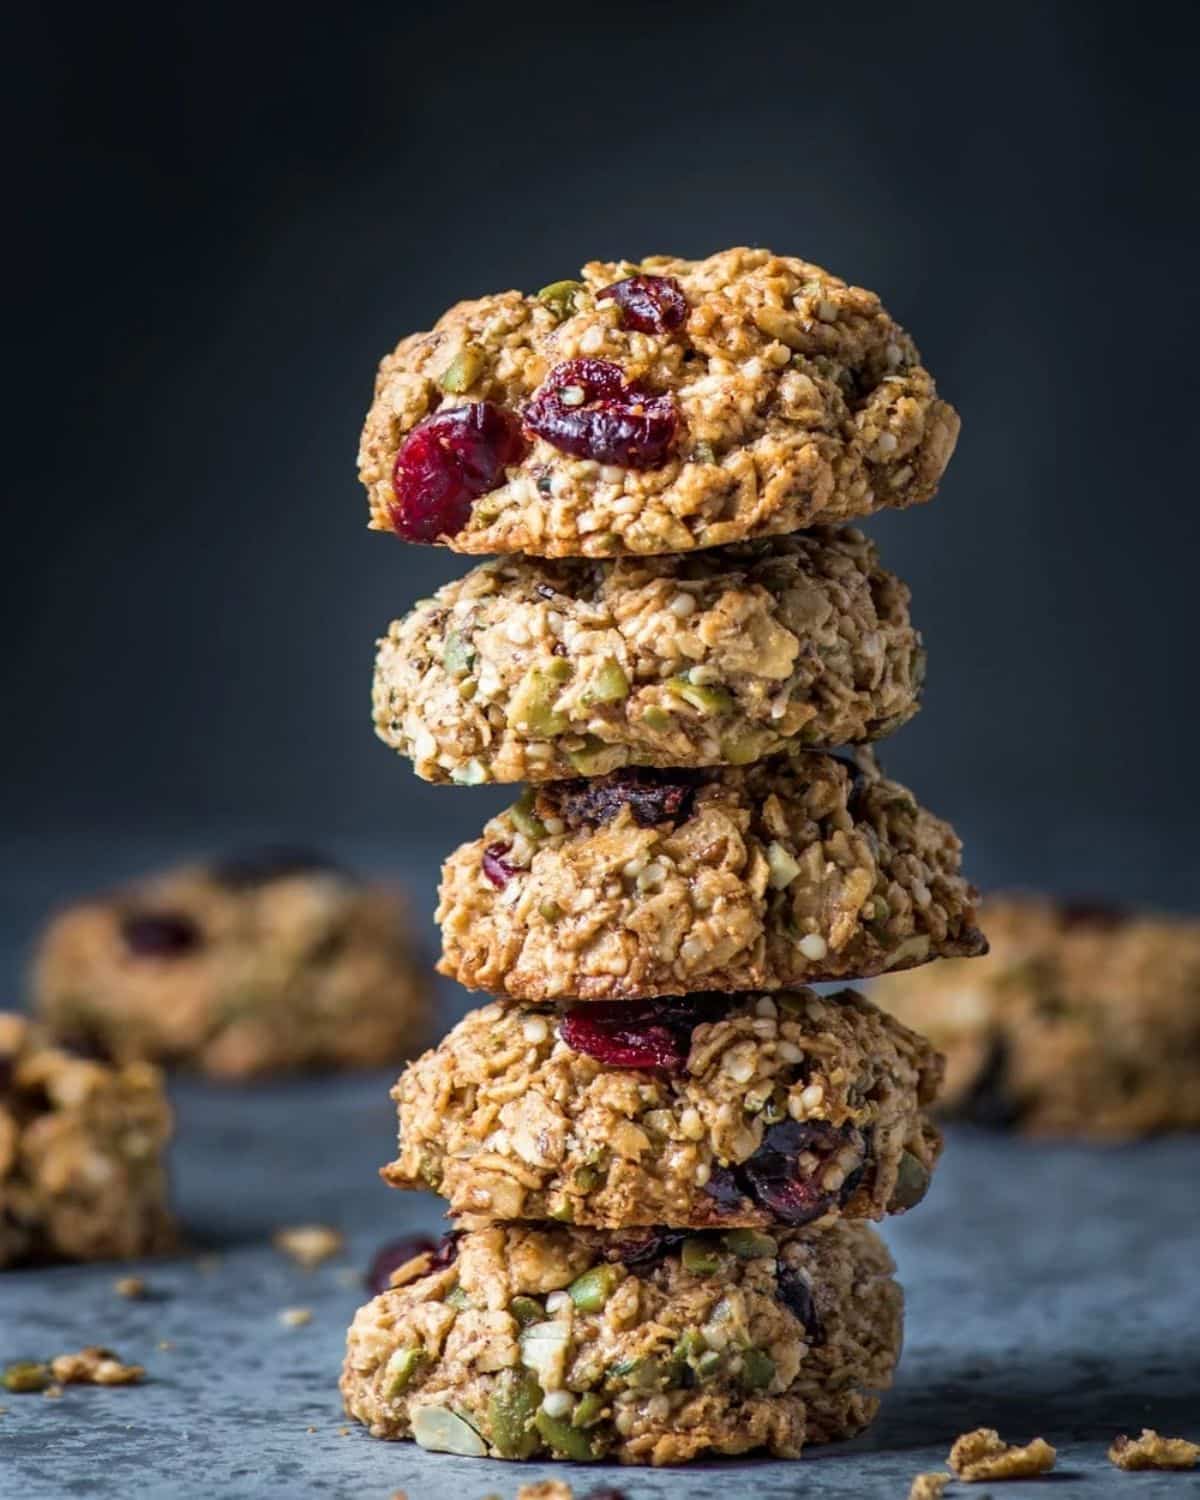 A pile of vegan gluten-free Breakfast Cookies